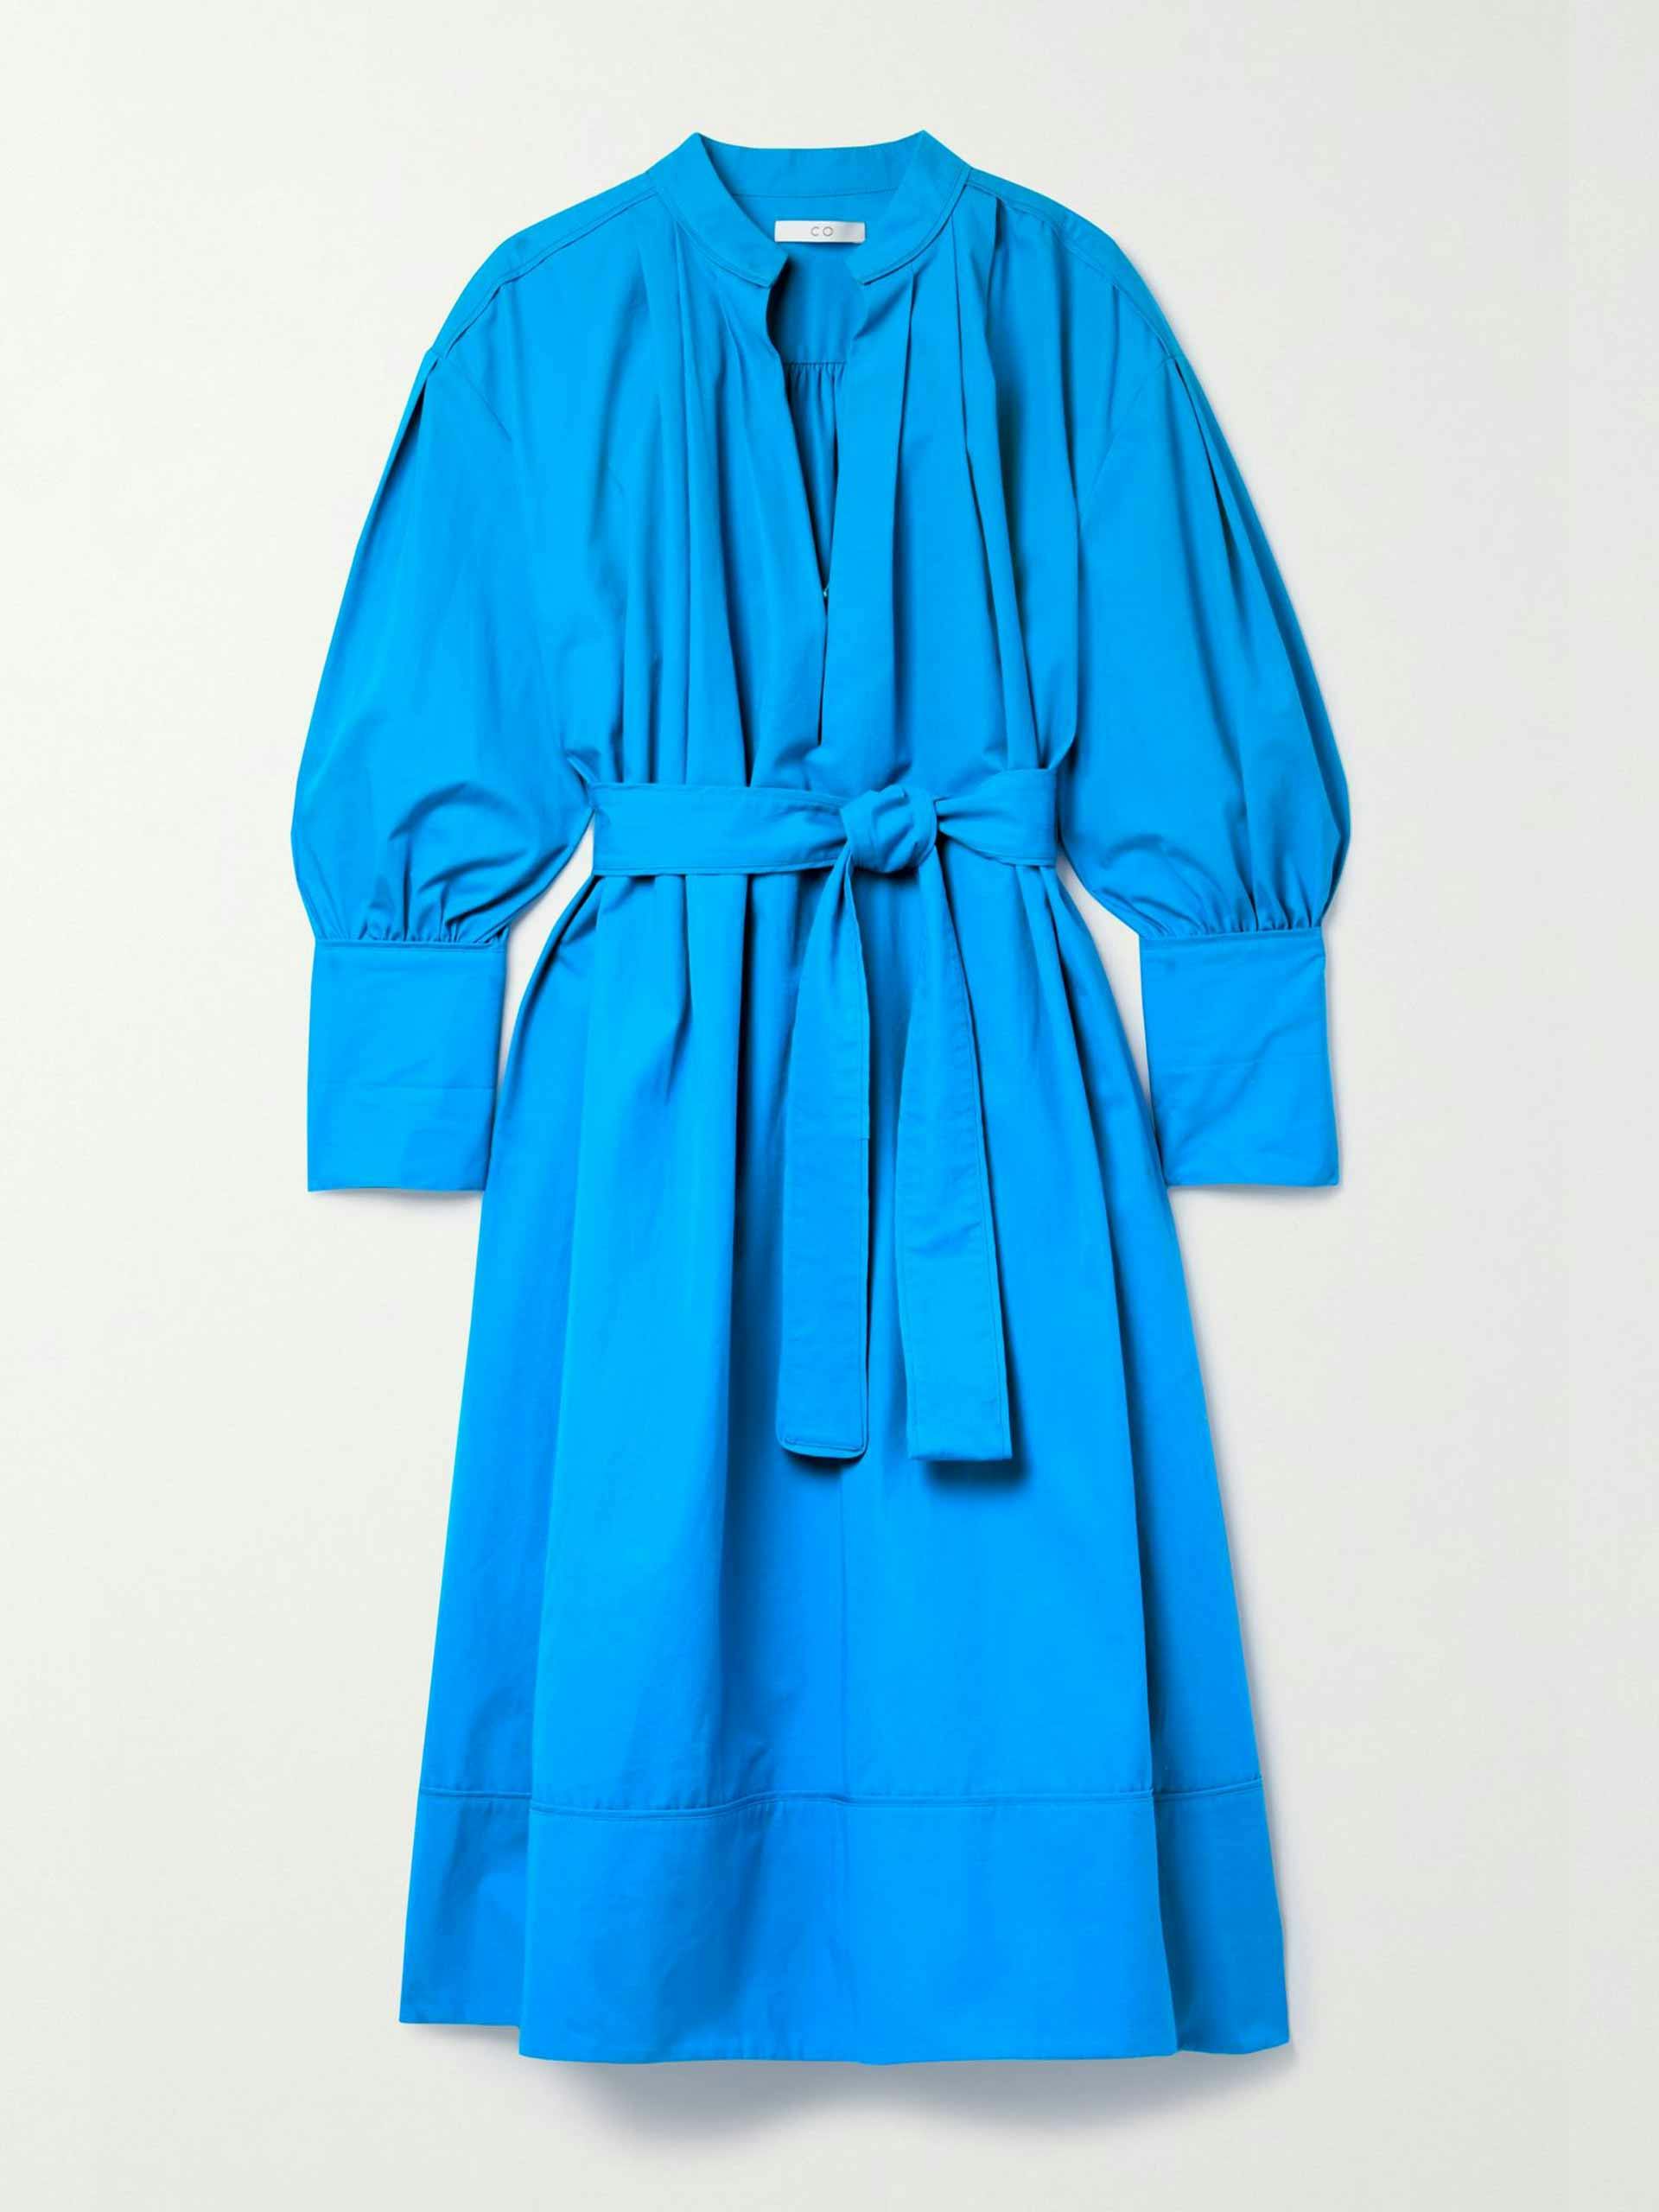 Belted blue dress